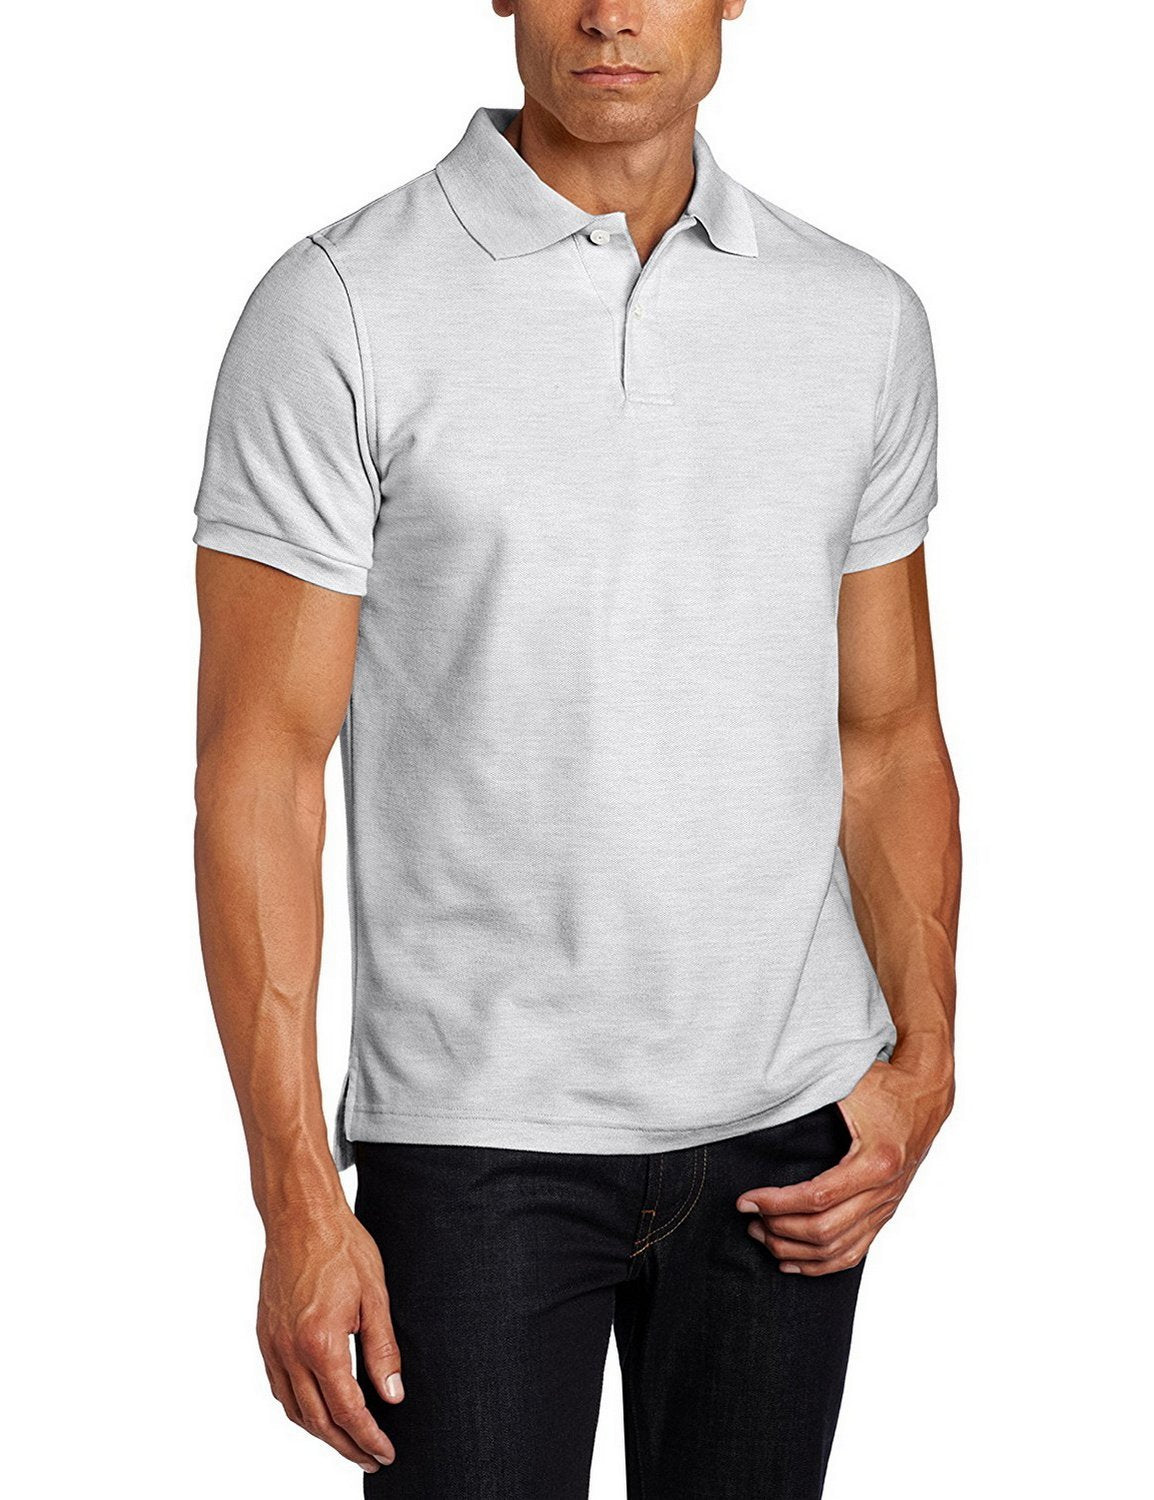 Penn State lululemon Men's Evolution Short Sleeve Polo Shirt